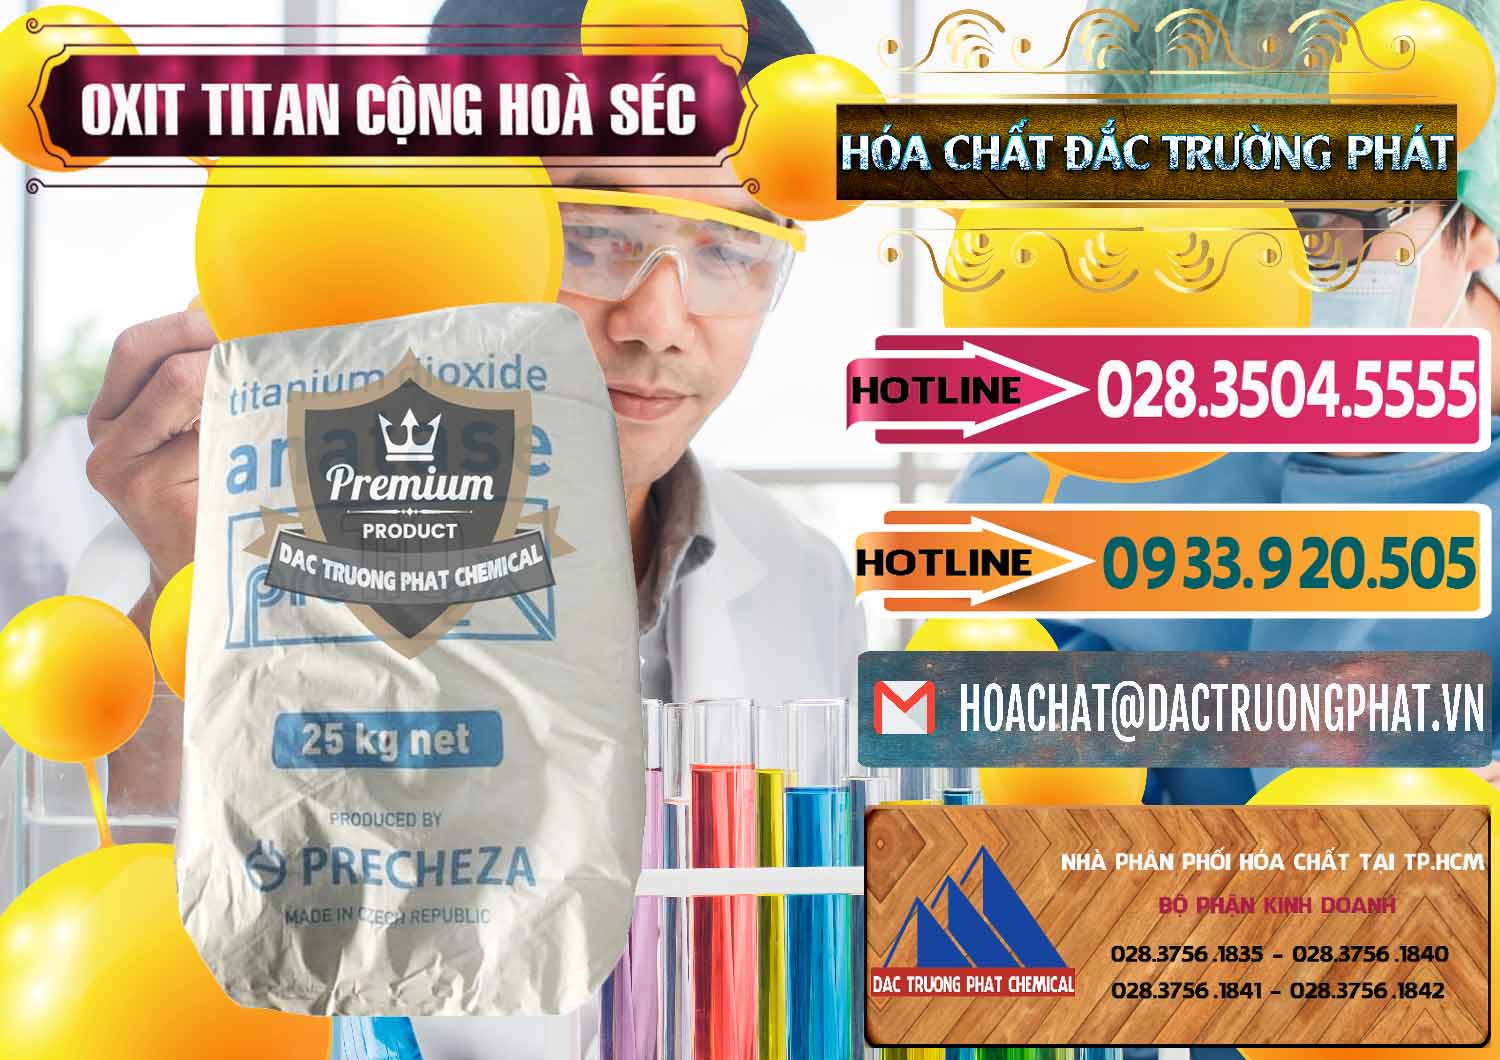 Nơi bán Oxit Titan KA100 – Tio2 Cộng Hòa Séc Czech Republic - 0407 - Đơn vị cung cấp & kinh doanh hóa chất tại TP.HCM - dactruongphat.vn